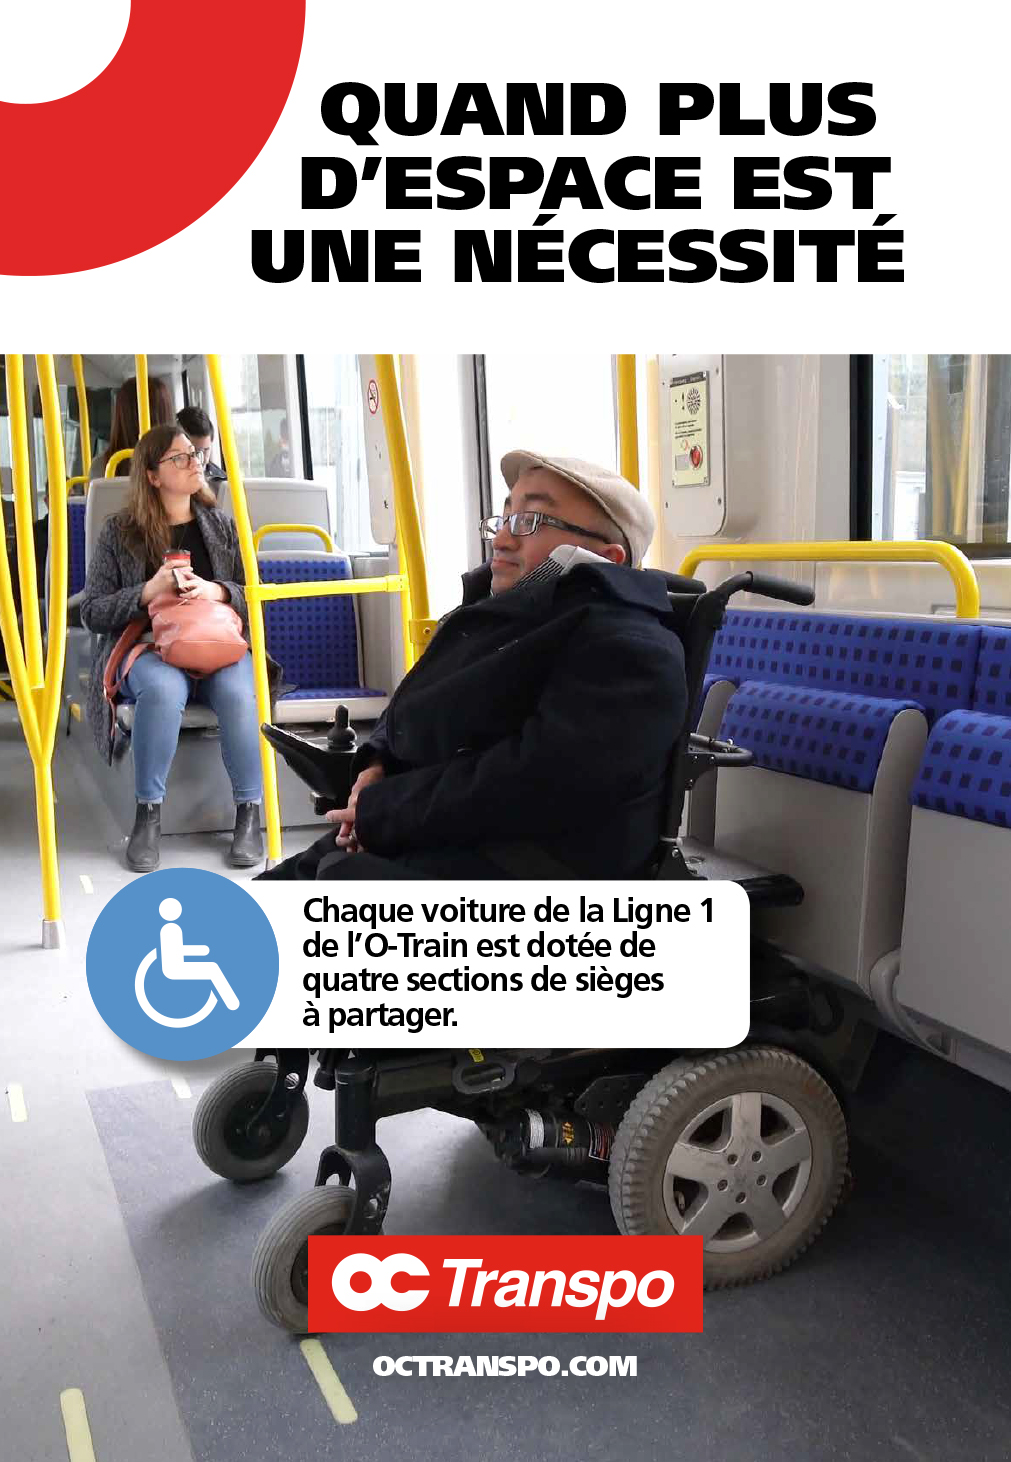 Un homme en fauteuil roulant électrique dans l'aire de sièges à partager. Texte sur l'image : Quand plus d'espace est une nécessité. Chaque voiture de la Ligne 1 de l'O-Train est dotée de quatre sections de sièges à partager.